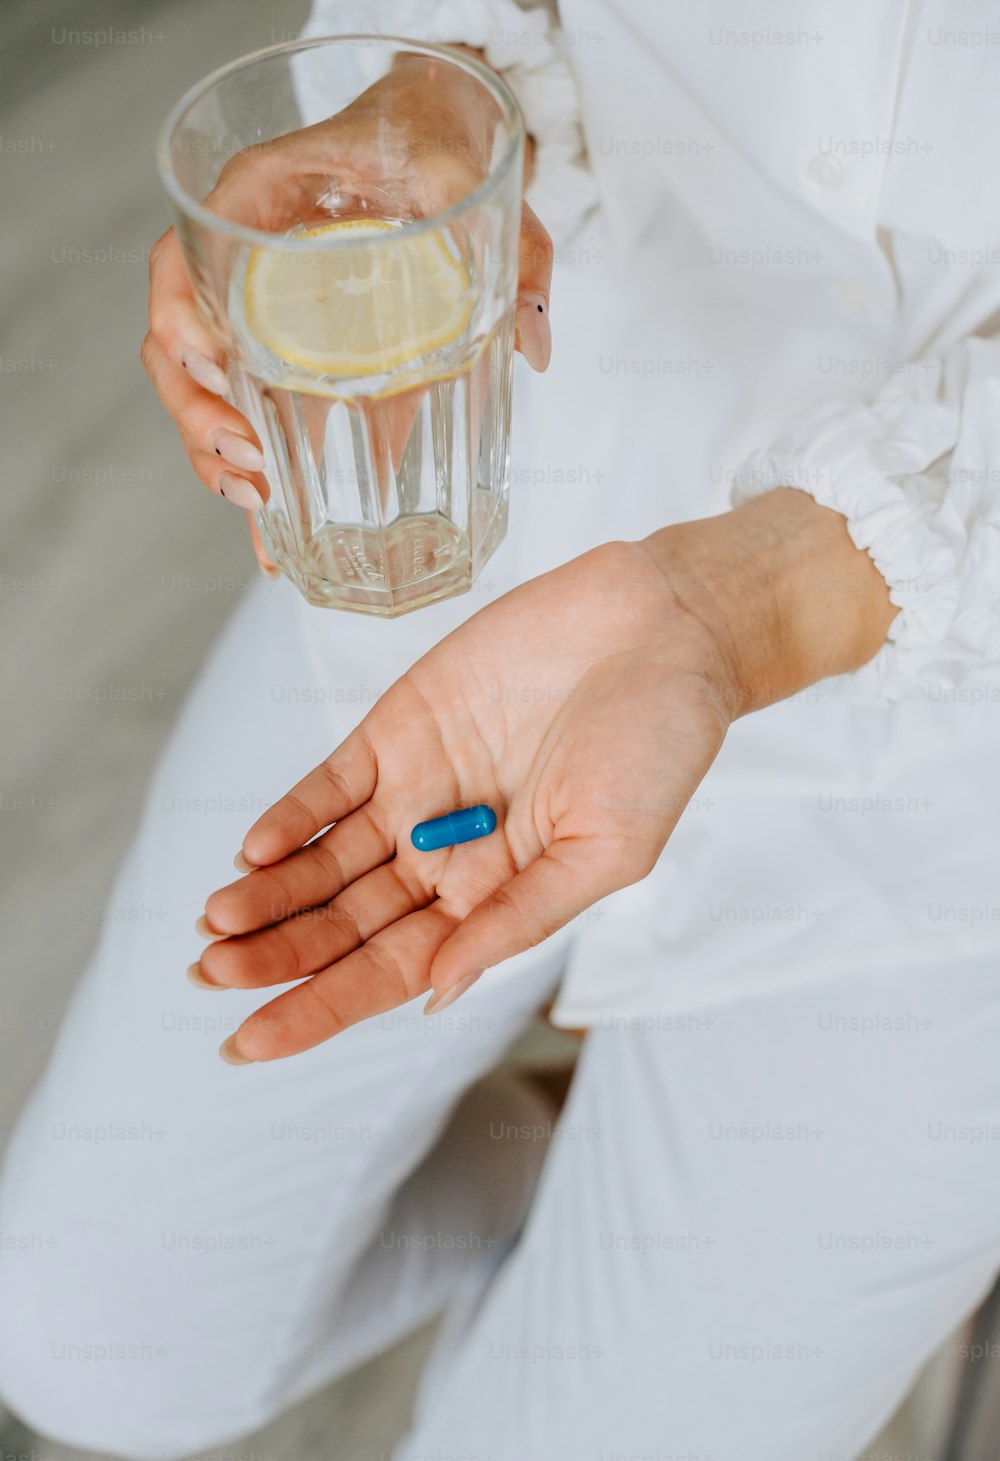 Eine Frau hält ein Glas Wasser und eine blaue Pille in der Hand